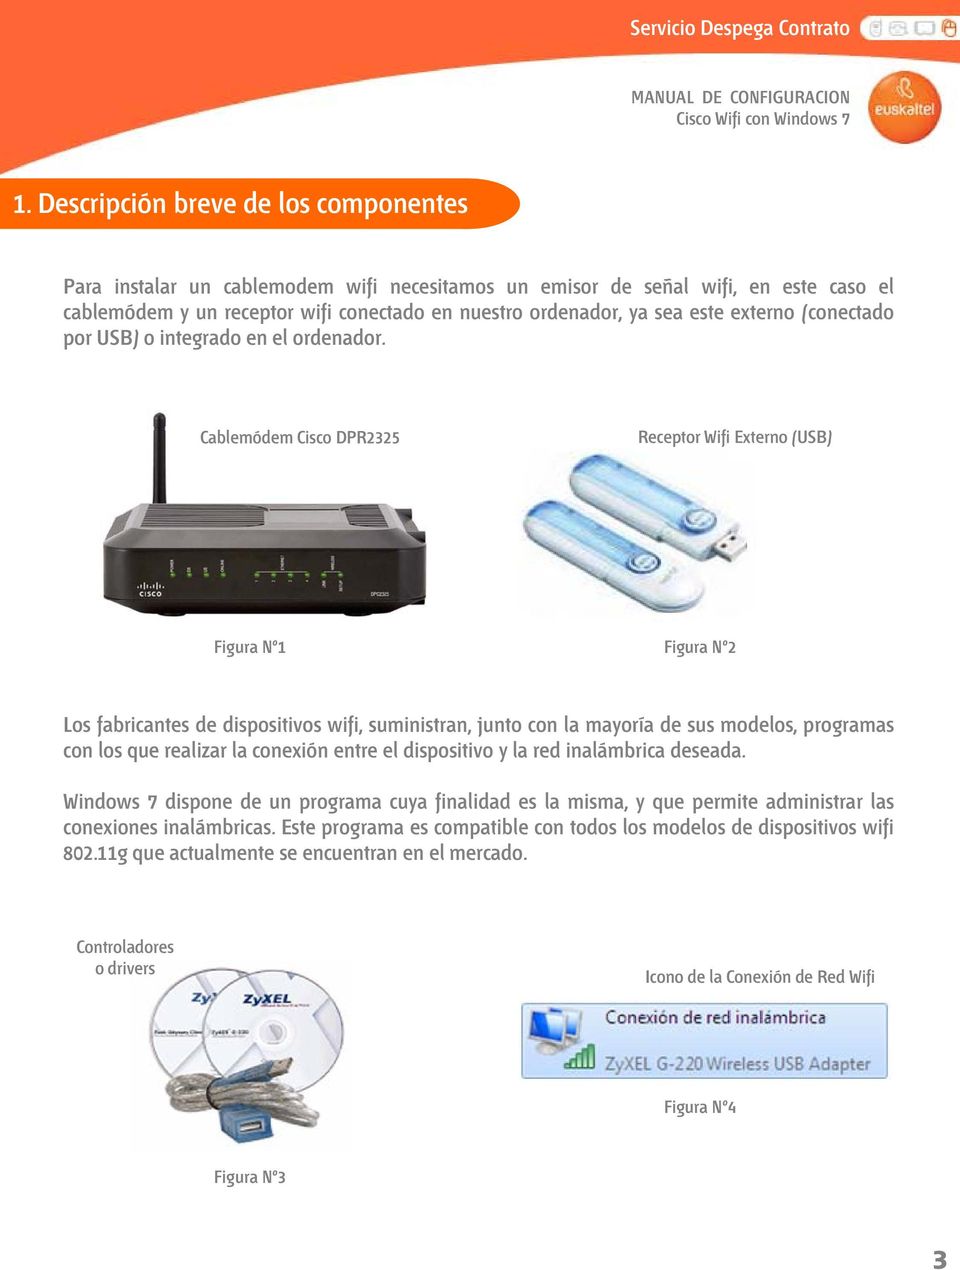 Cablemódem Cisco DPR2325 Receptor Wifi Externo (USB) Figura Nº1 Figura Nº2 Los fabricantes de dispositivos wifi, suministran, junto con la mayoría de sus modelos, programas con los que realizar la